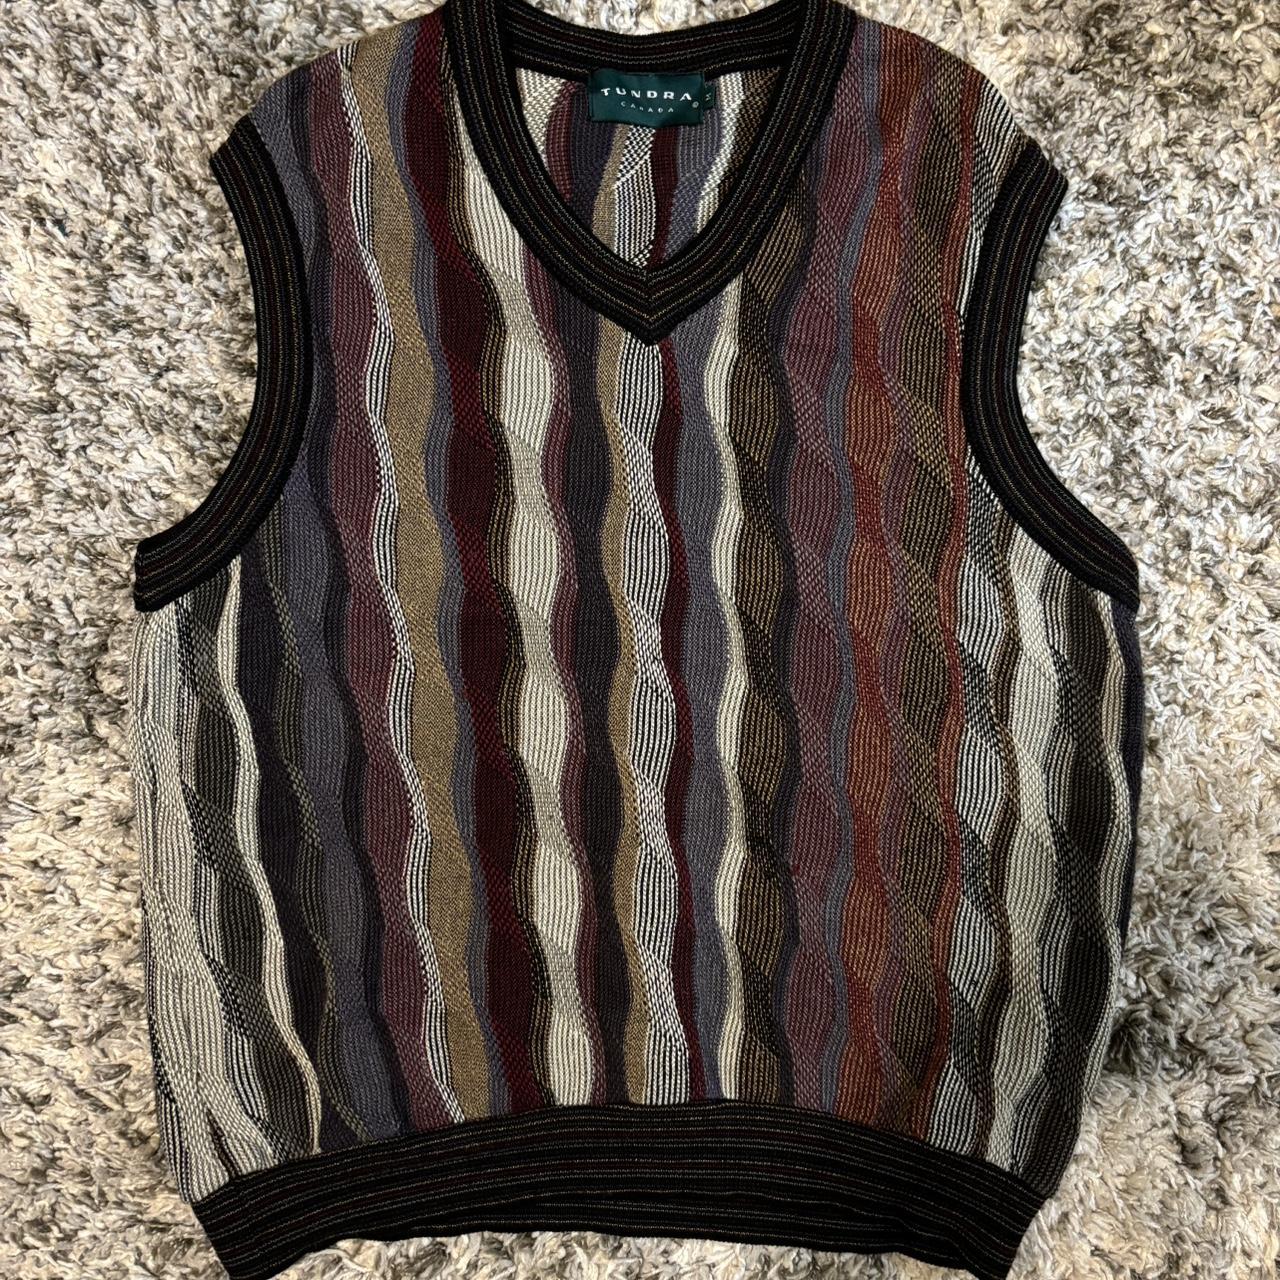 Tundra Sweater Vest Multicolor - Depop